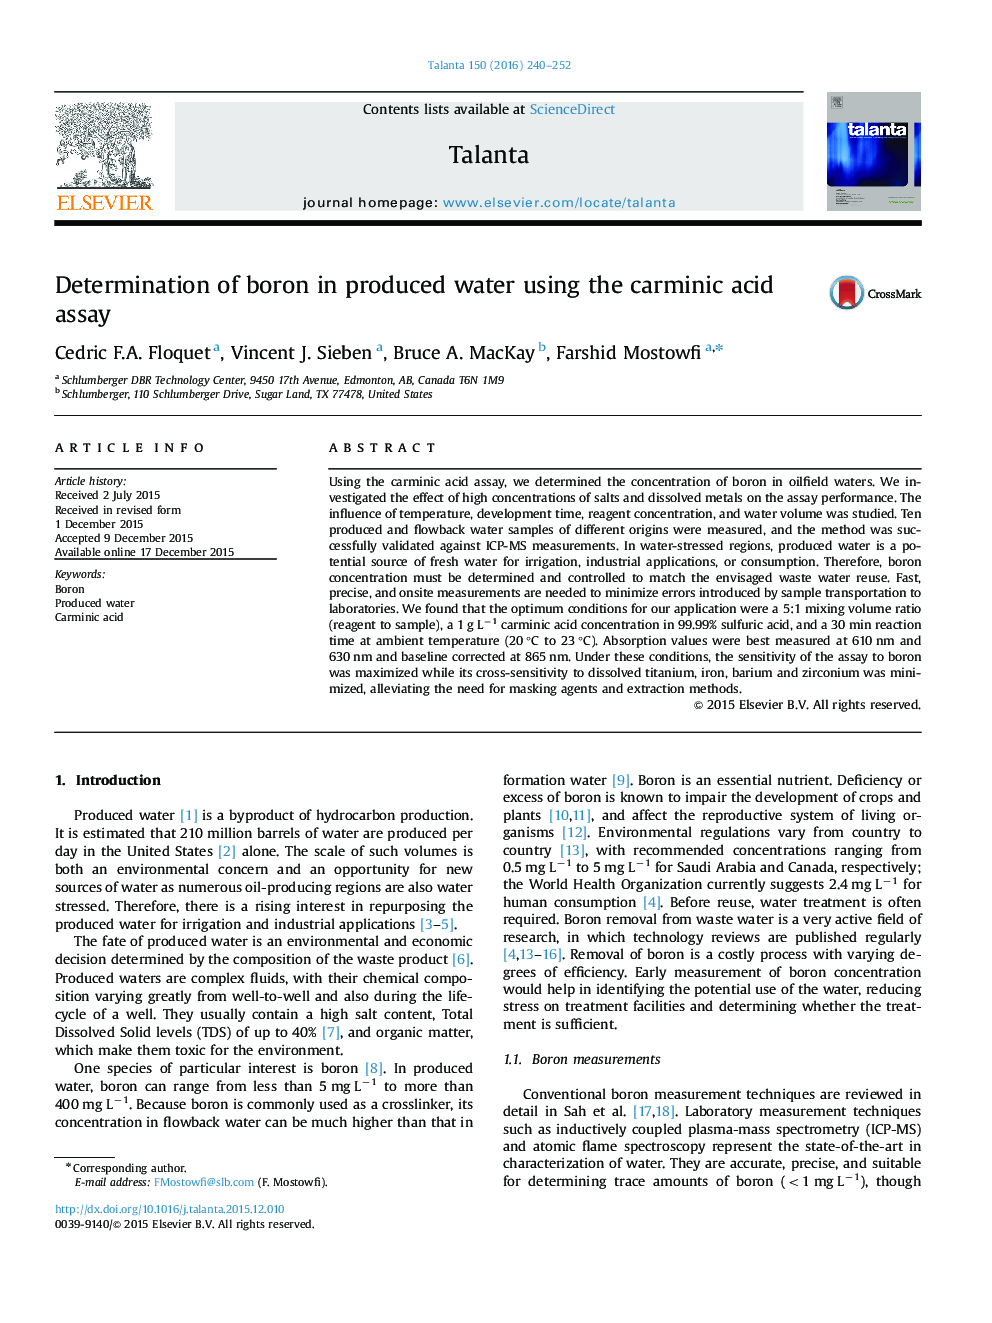 تعیین بور در آب تولید شده با استفاده از آزمون اسید کارنییک اسید 